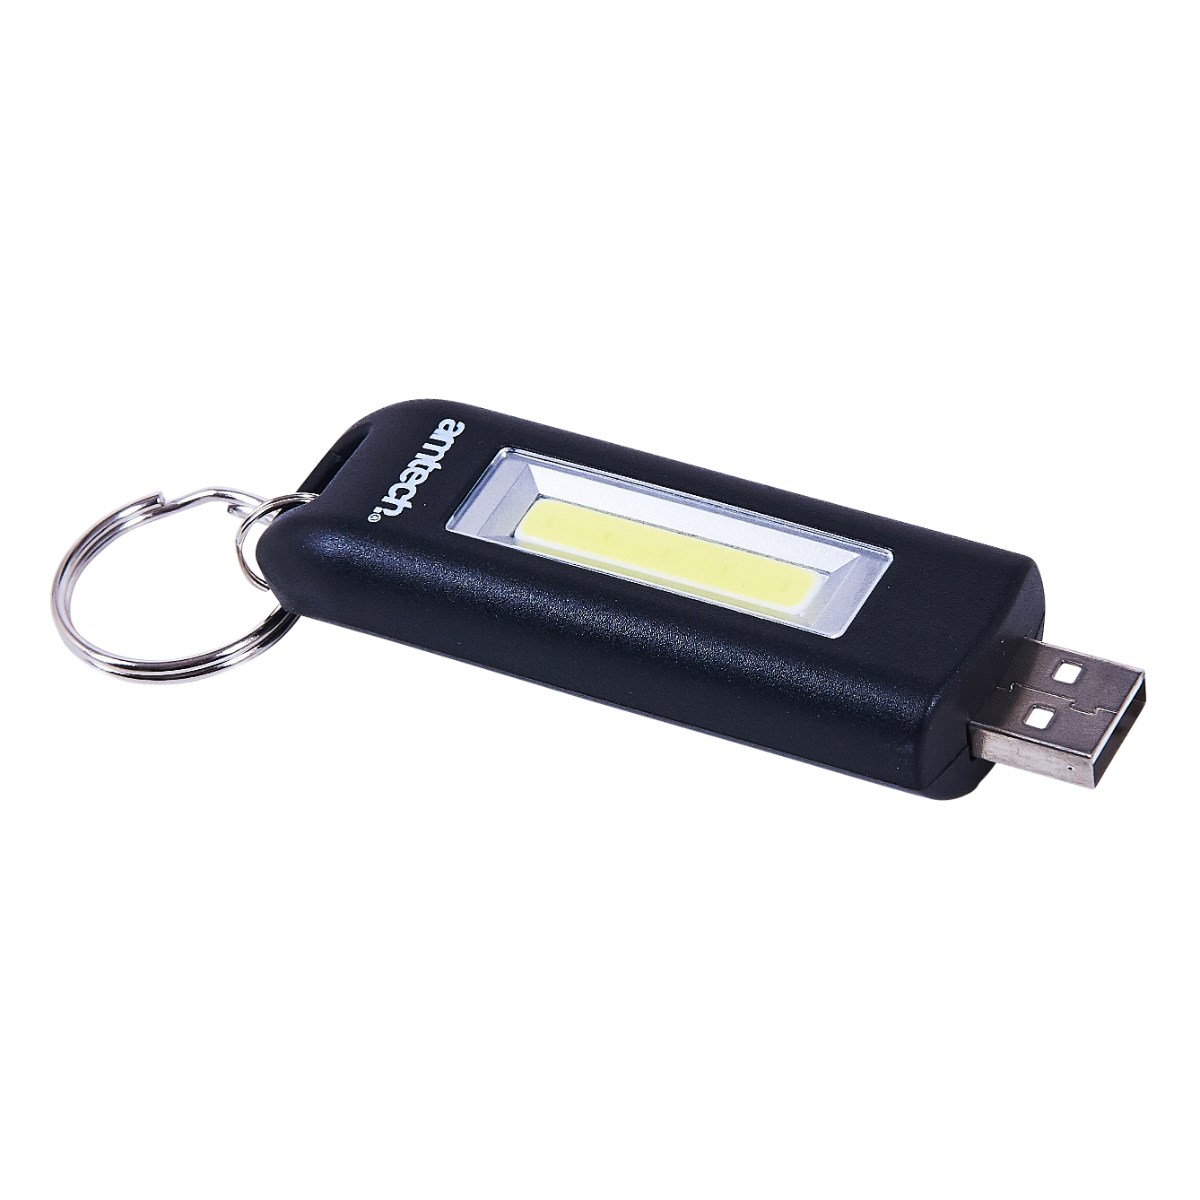 Rechargeable Key-ring Mini Torch USB Led Light 60 Lumen